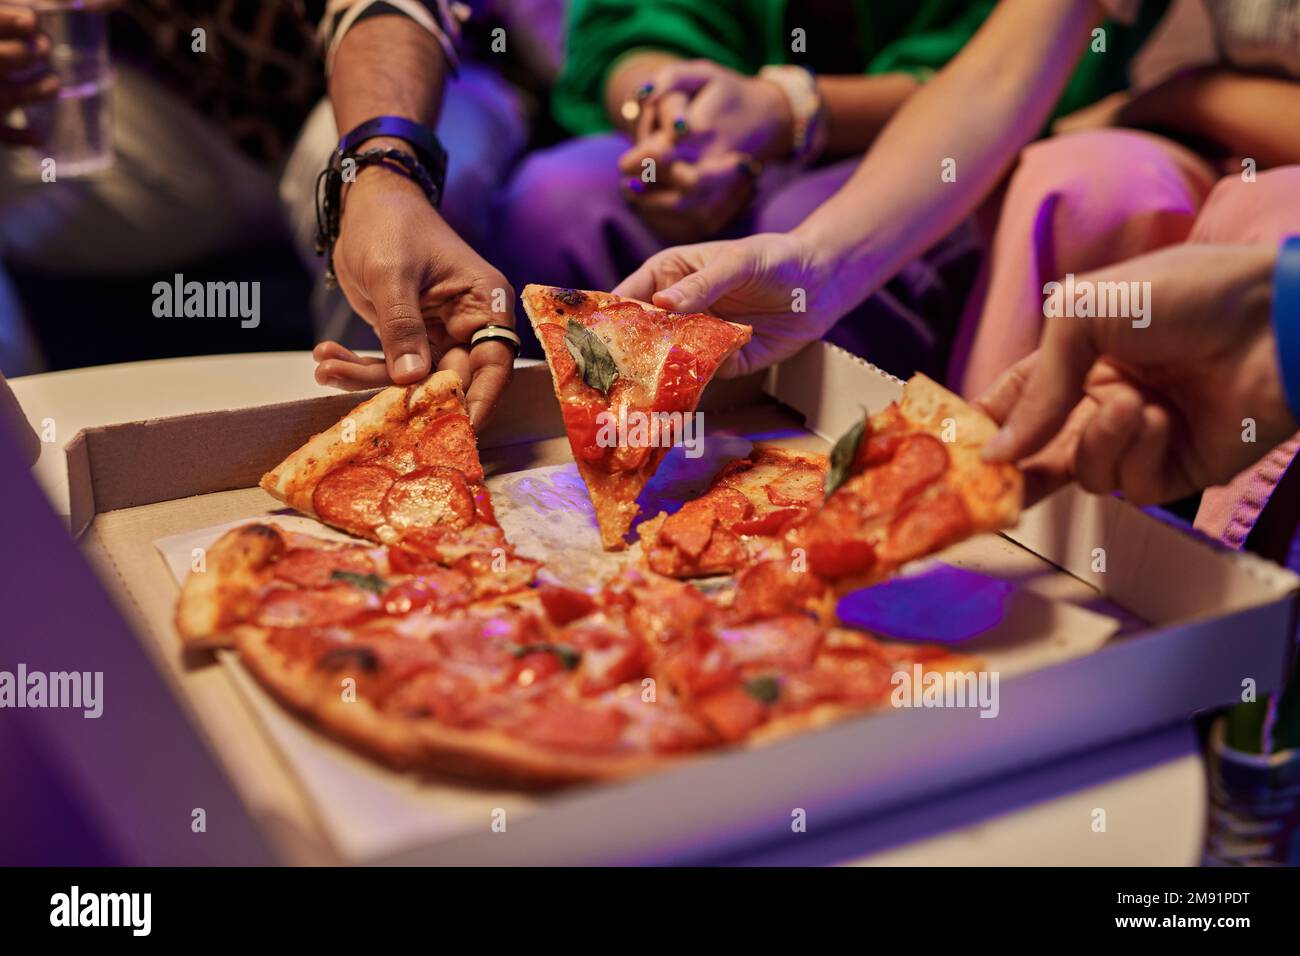 Gros plan de tranches de pizza appétissantes dans une boîte carrée en carton et des mains de jeunes amis les emportant et mangeant tout en appréciant la fête à la maison Banque D'Images